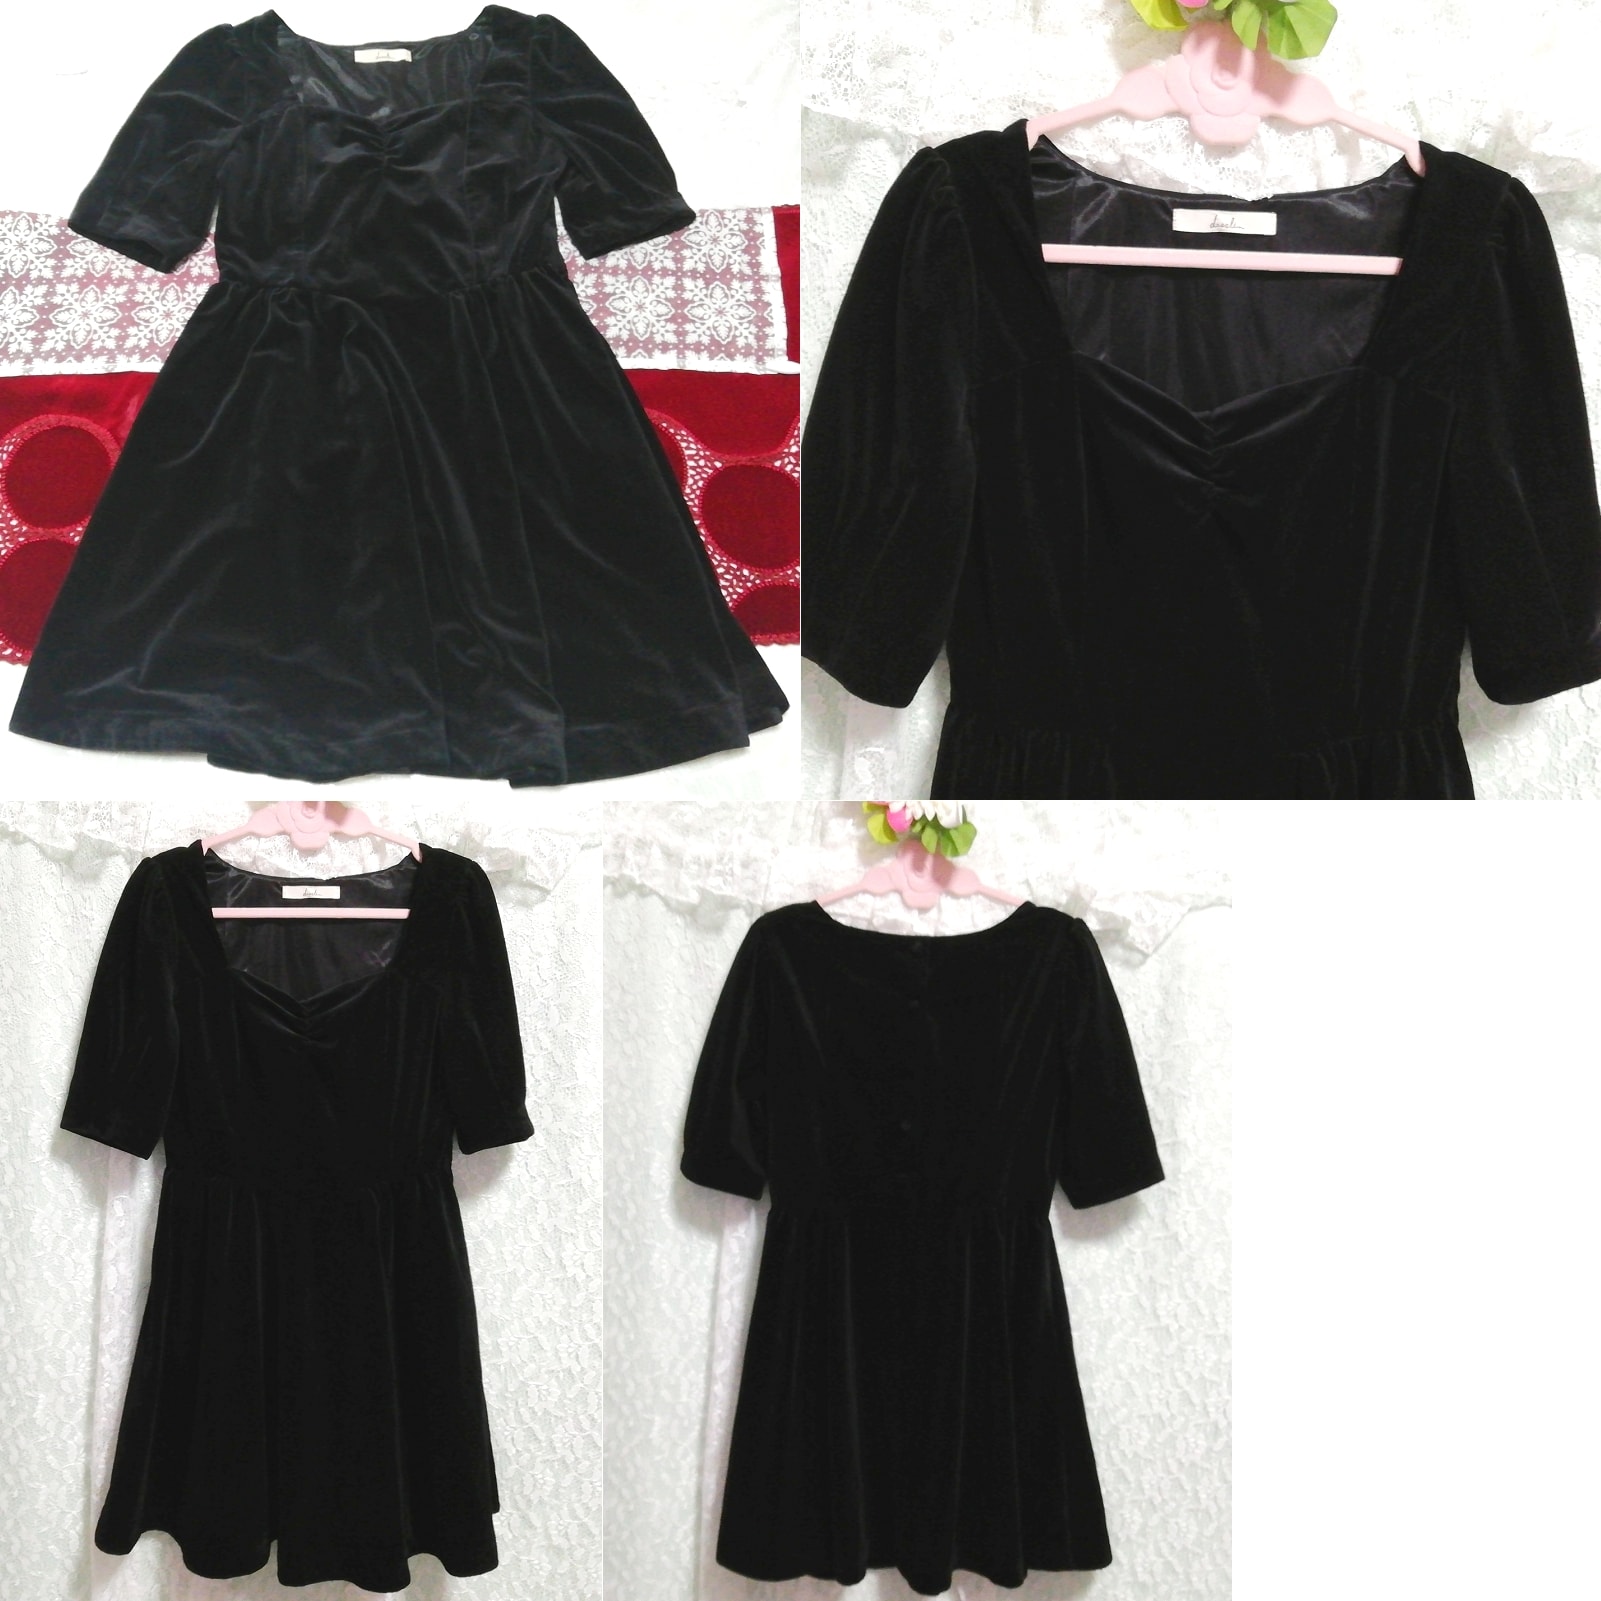 فستان نوم من القطيفة اللامعة باللون الأسود من قطعة واحدة, سترة, كم قصير, حجم م